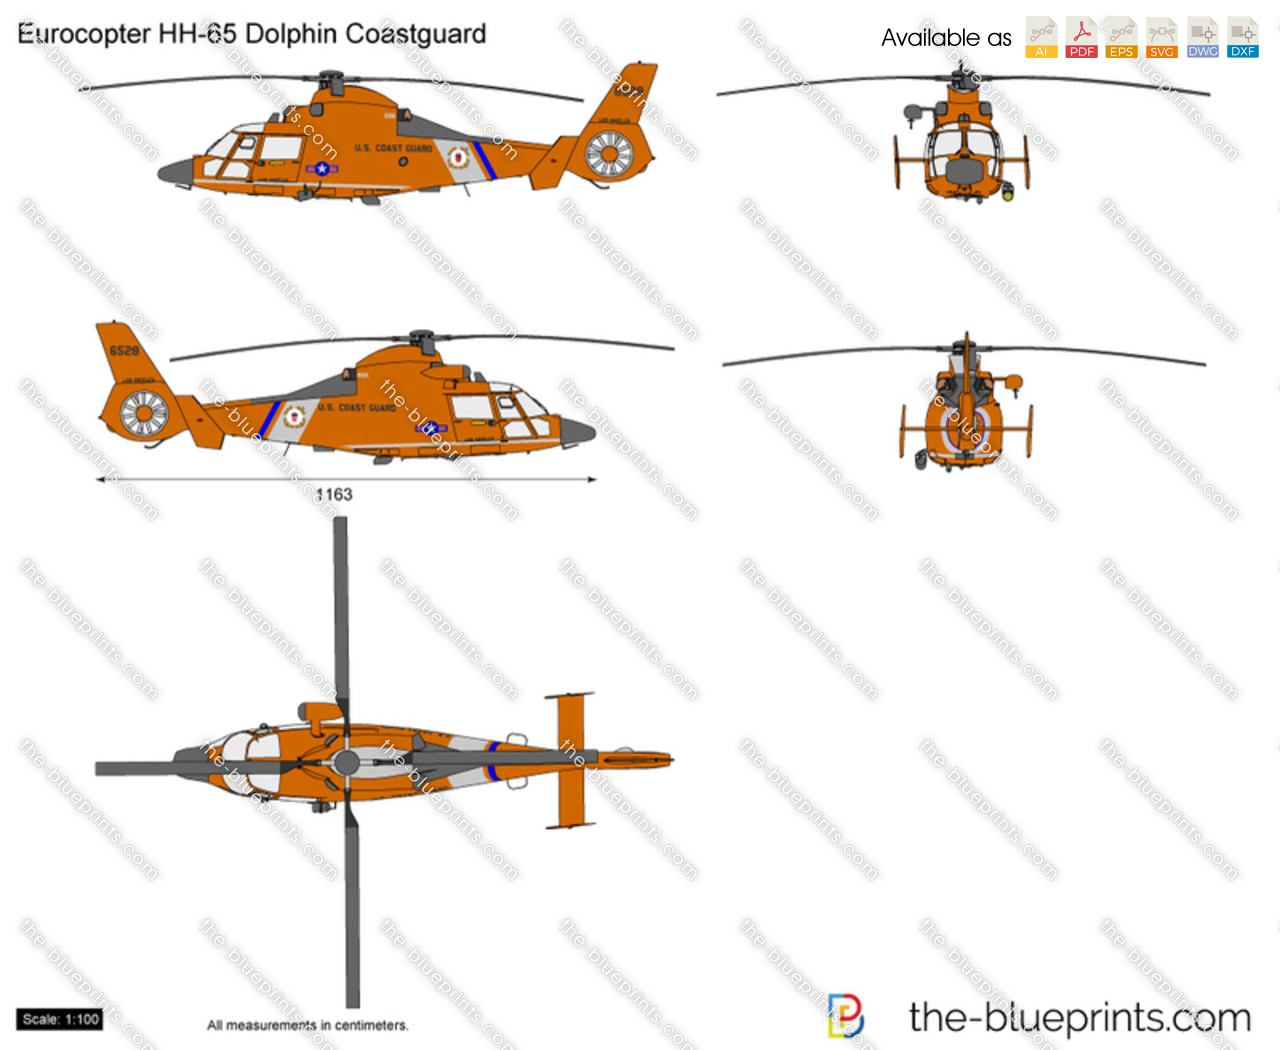 Eurocopter HH-65 Dolphin Coastguard